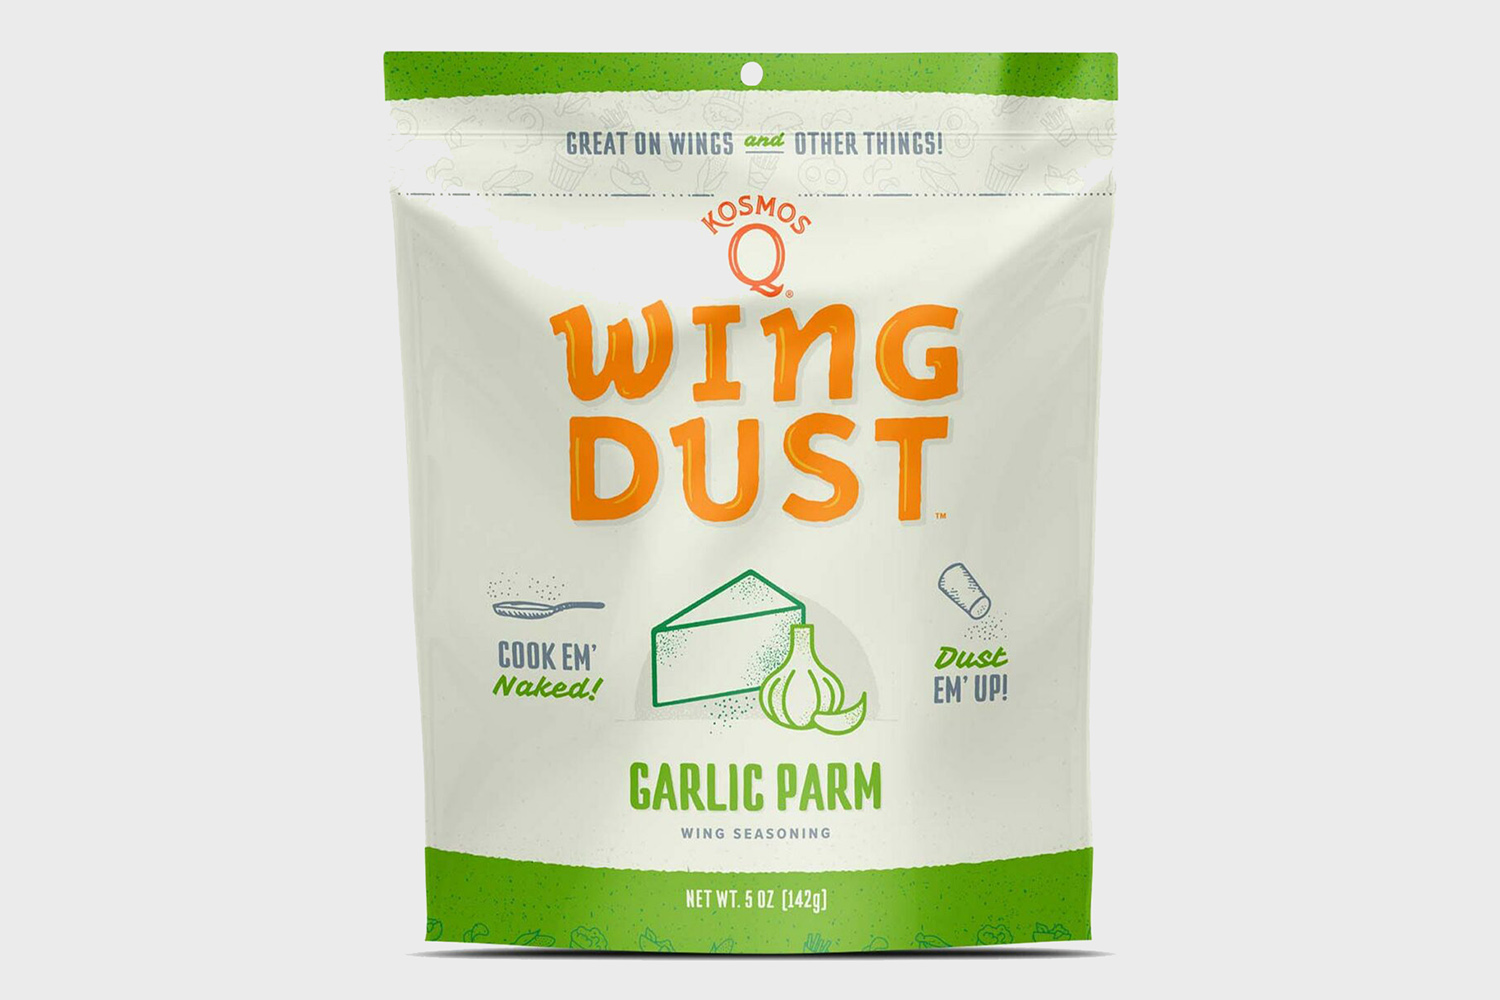 Garlic Parm Wing Seasoning